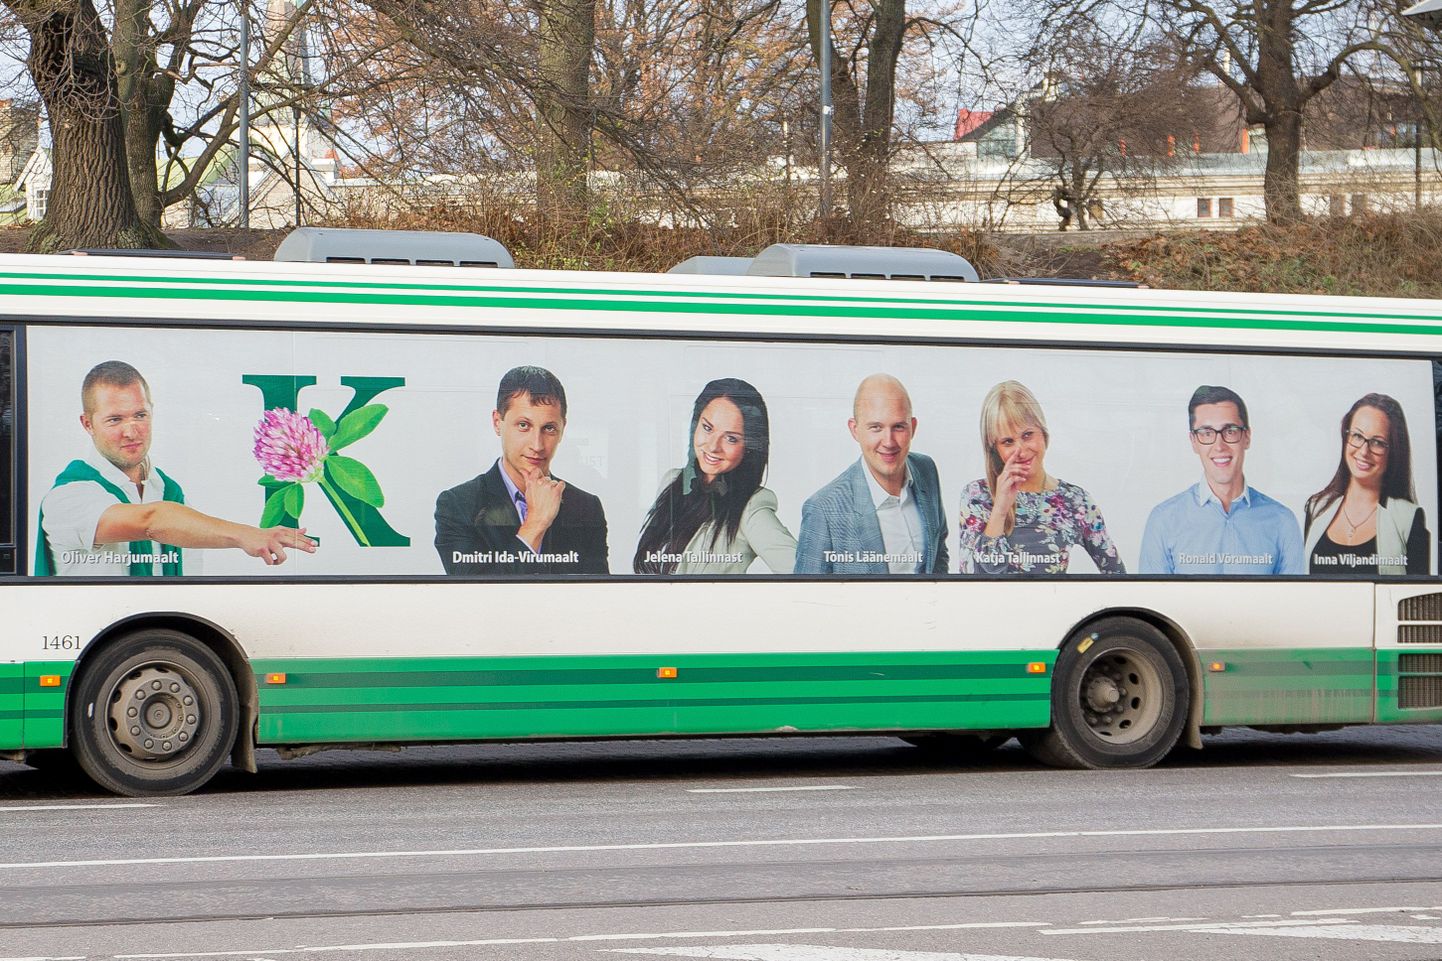 Keskerakonna reklaam bussil, kuid linn on ise keelanud ühistranspordis poliitilise reklaami.